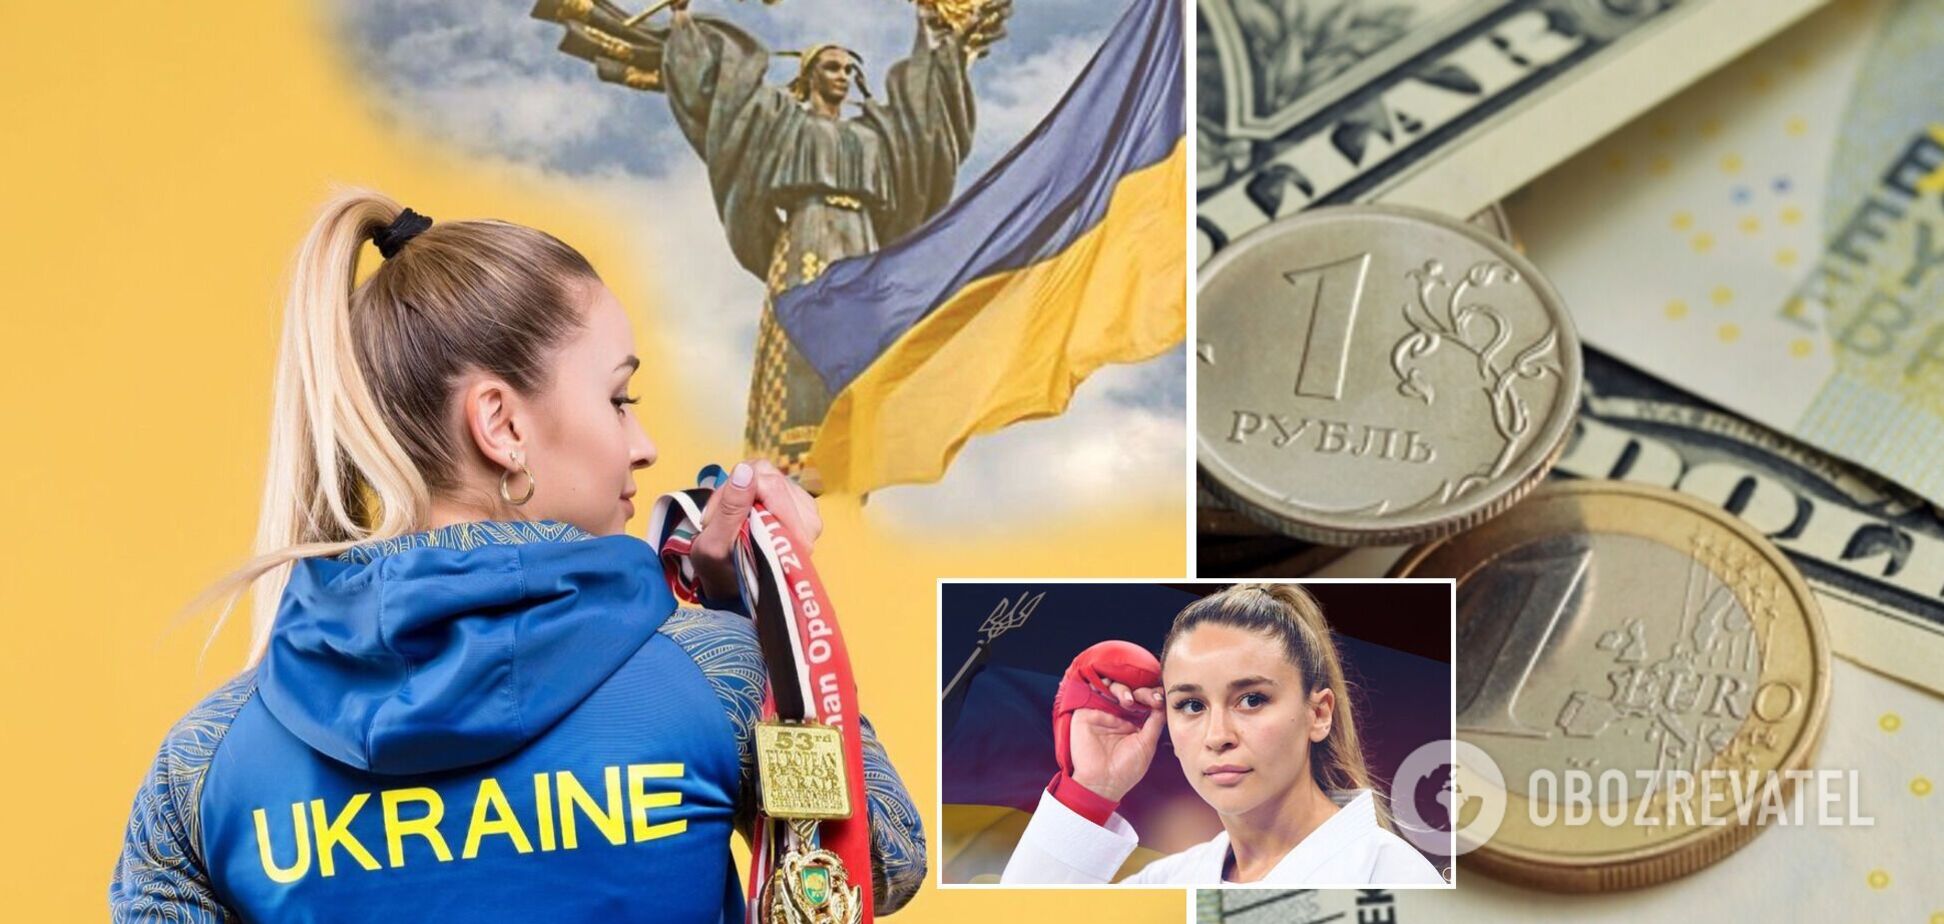 Слышали, что в России все за*бись – и курс доллара, и перспектива работы: призер Олимпиады потролила РФ и получила угрозы